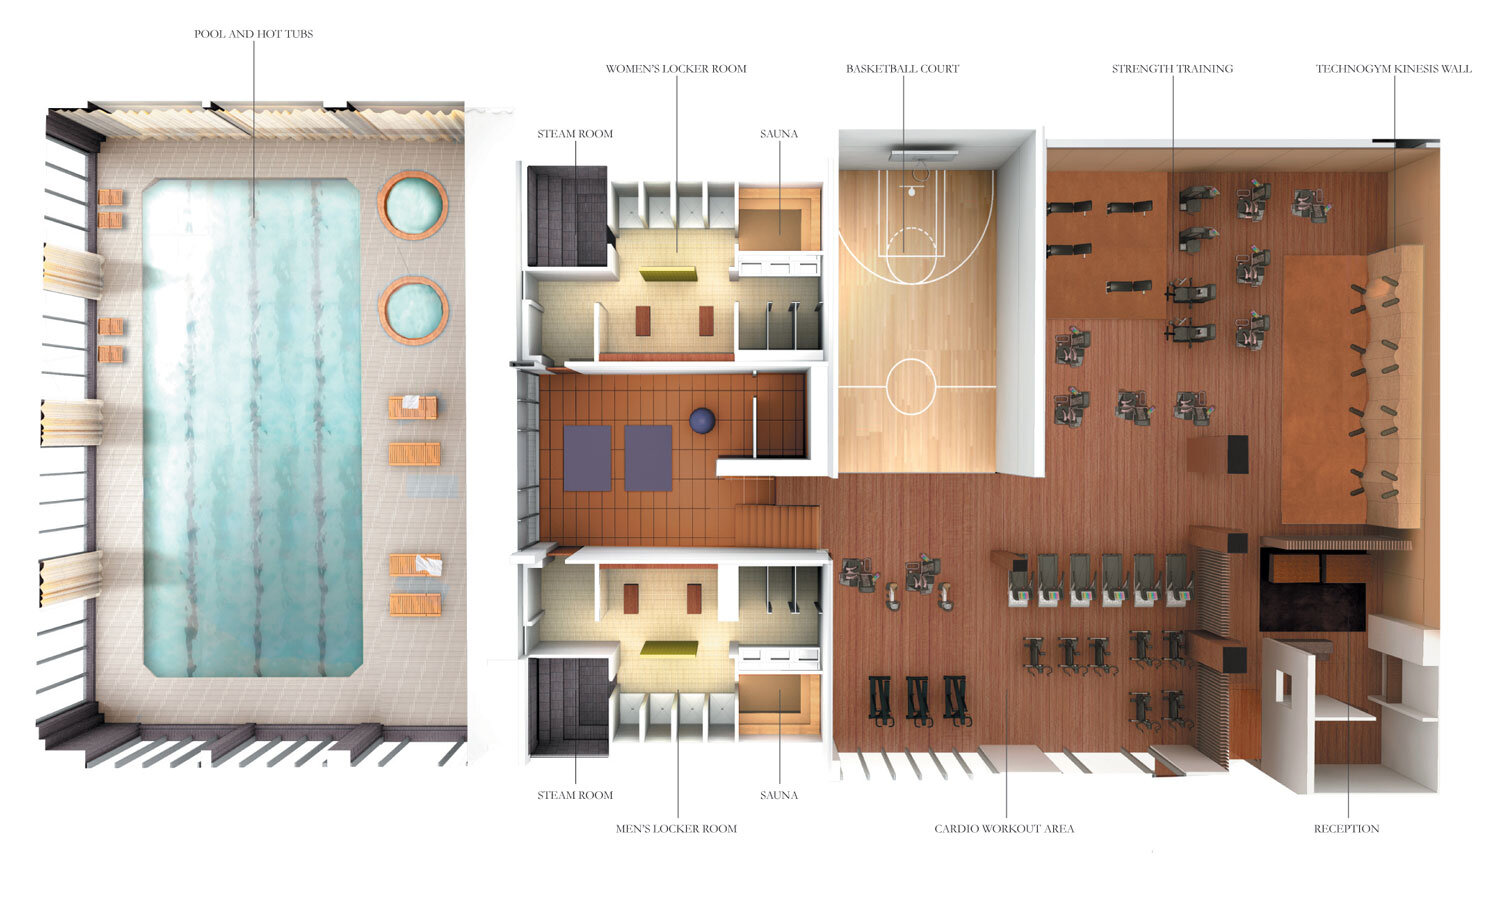  515 East 72 - Amenities Floor Plan 